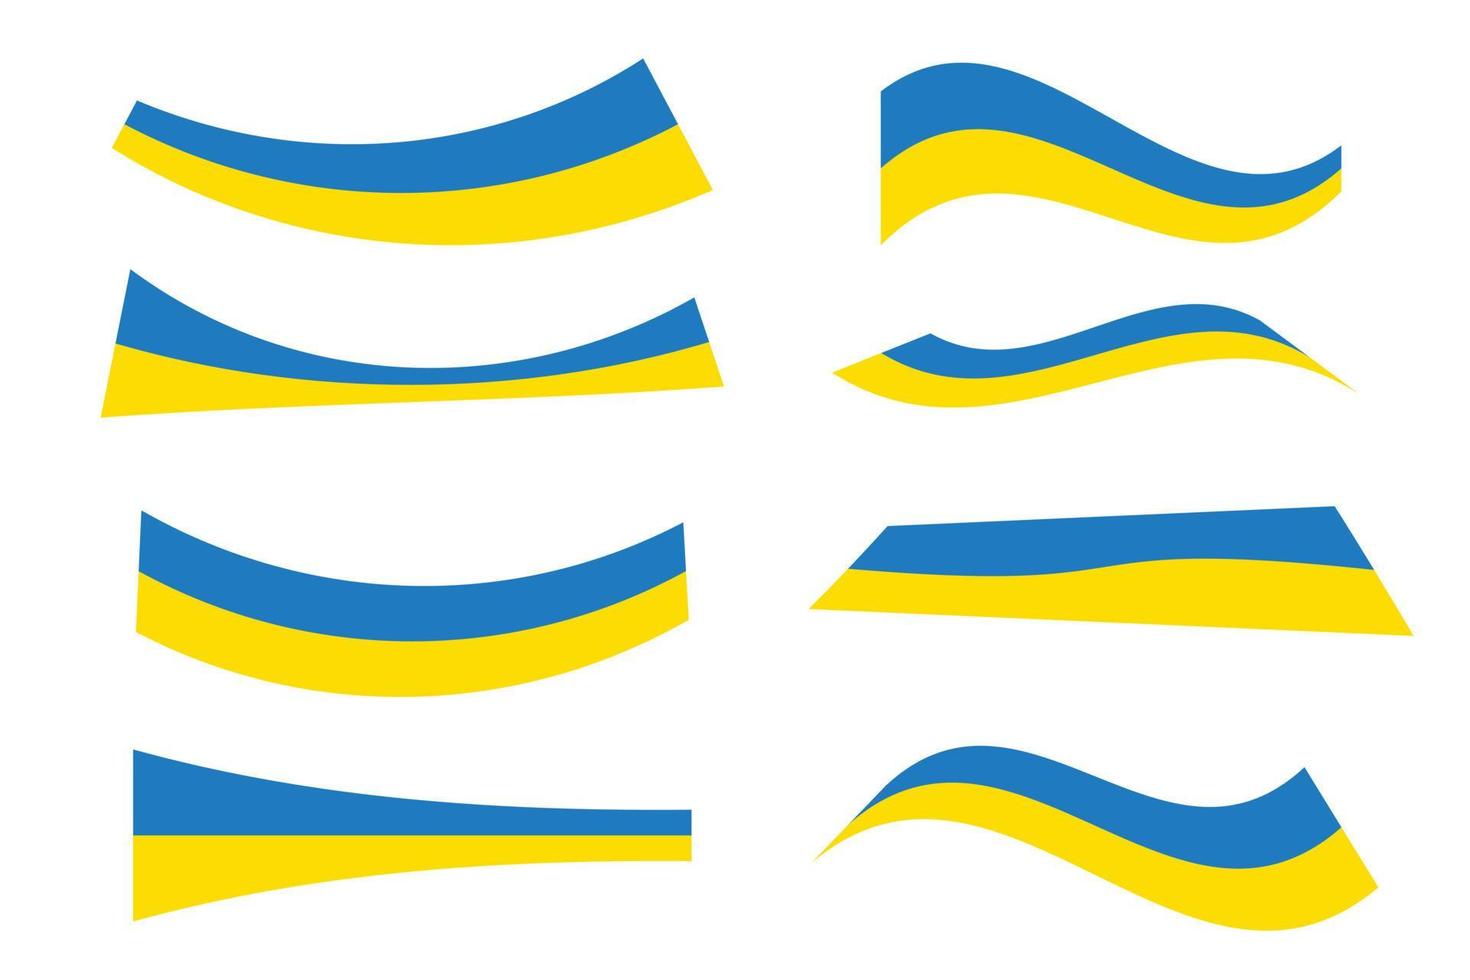 ukrainische flagge - gelbe und blaue horizontale bänder. satz verschiedener verdrehter gewickelter formen symbol der ukraine. Sammlung ukrainischer Flaggen. vektor